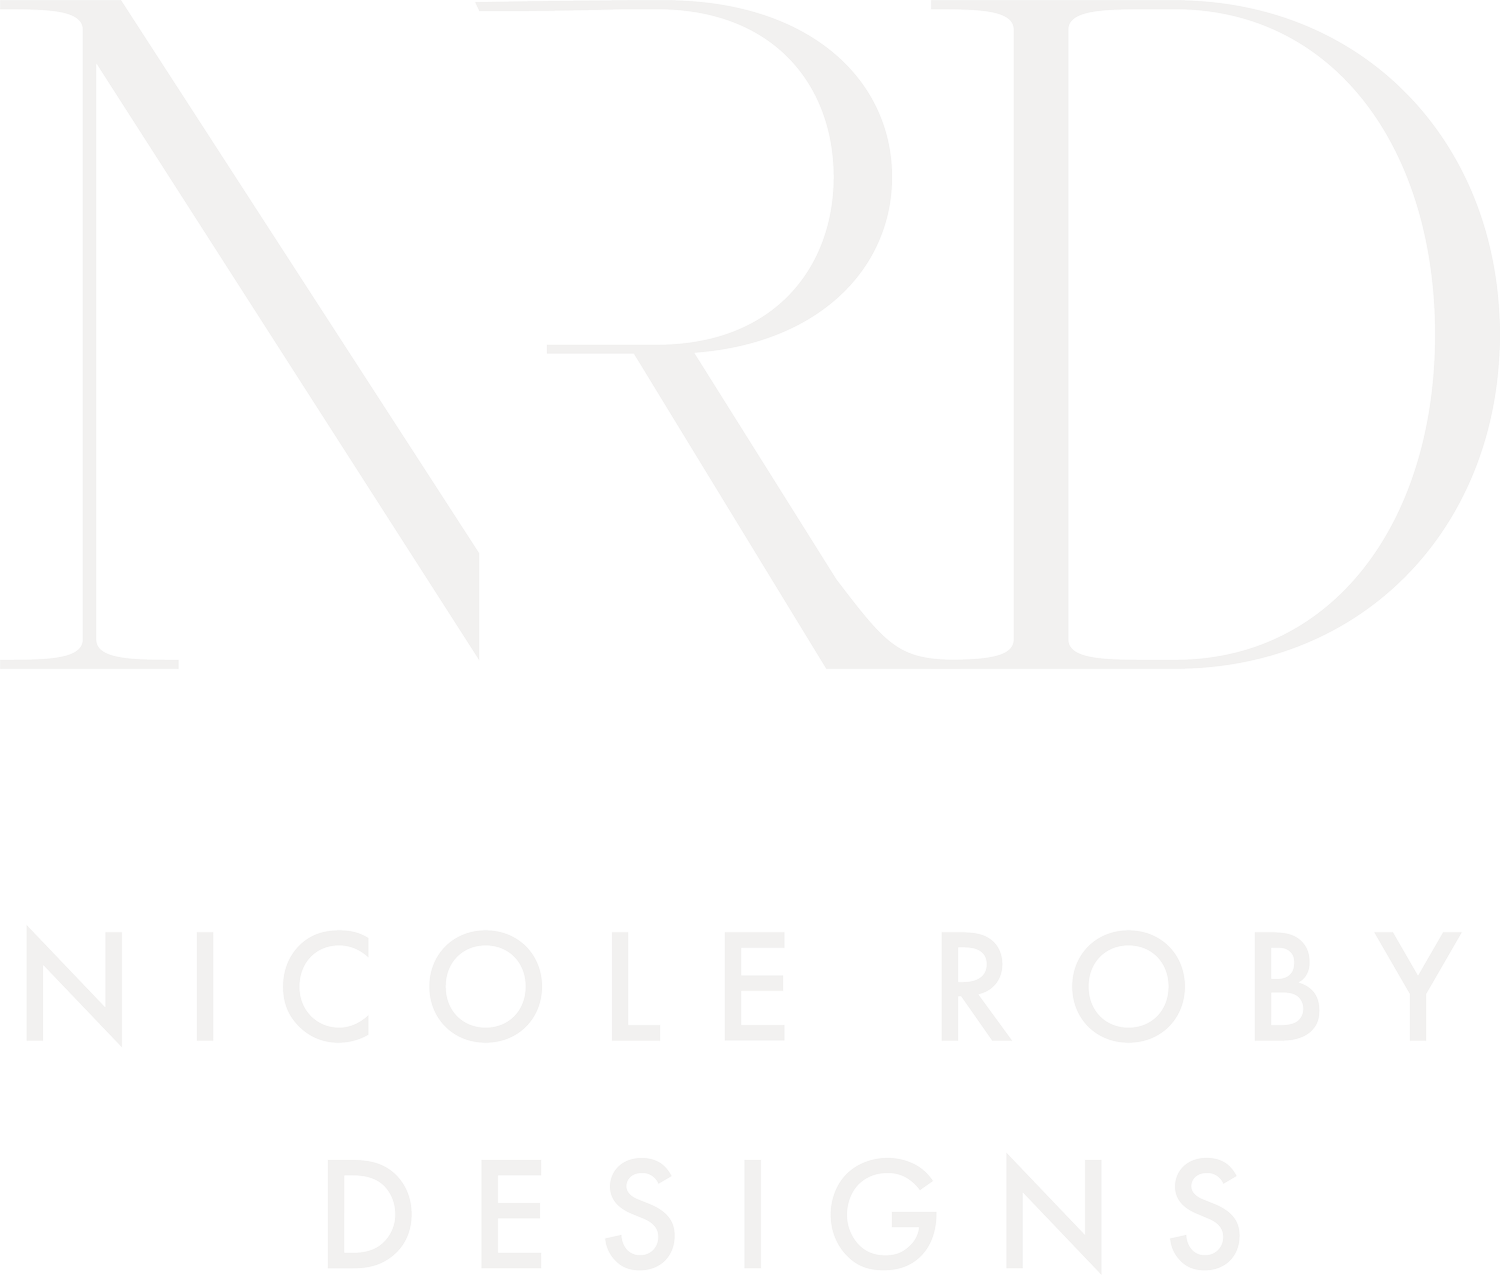 Nicole Roby Designs